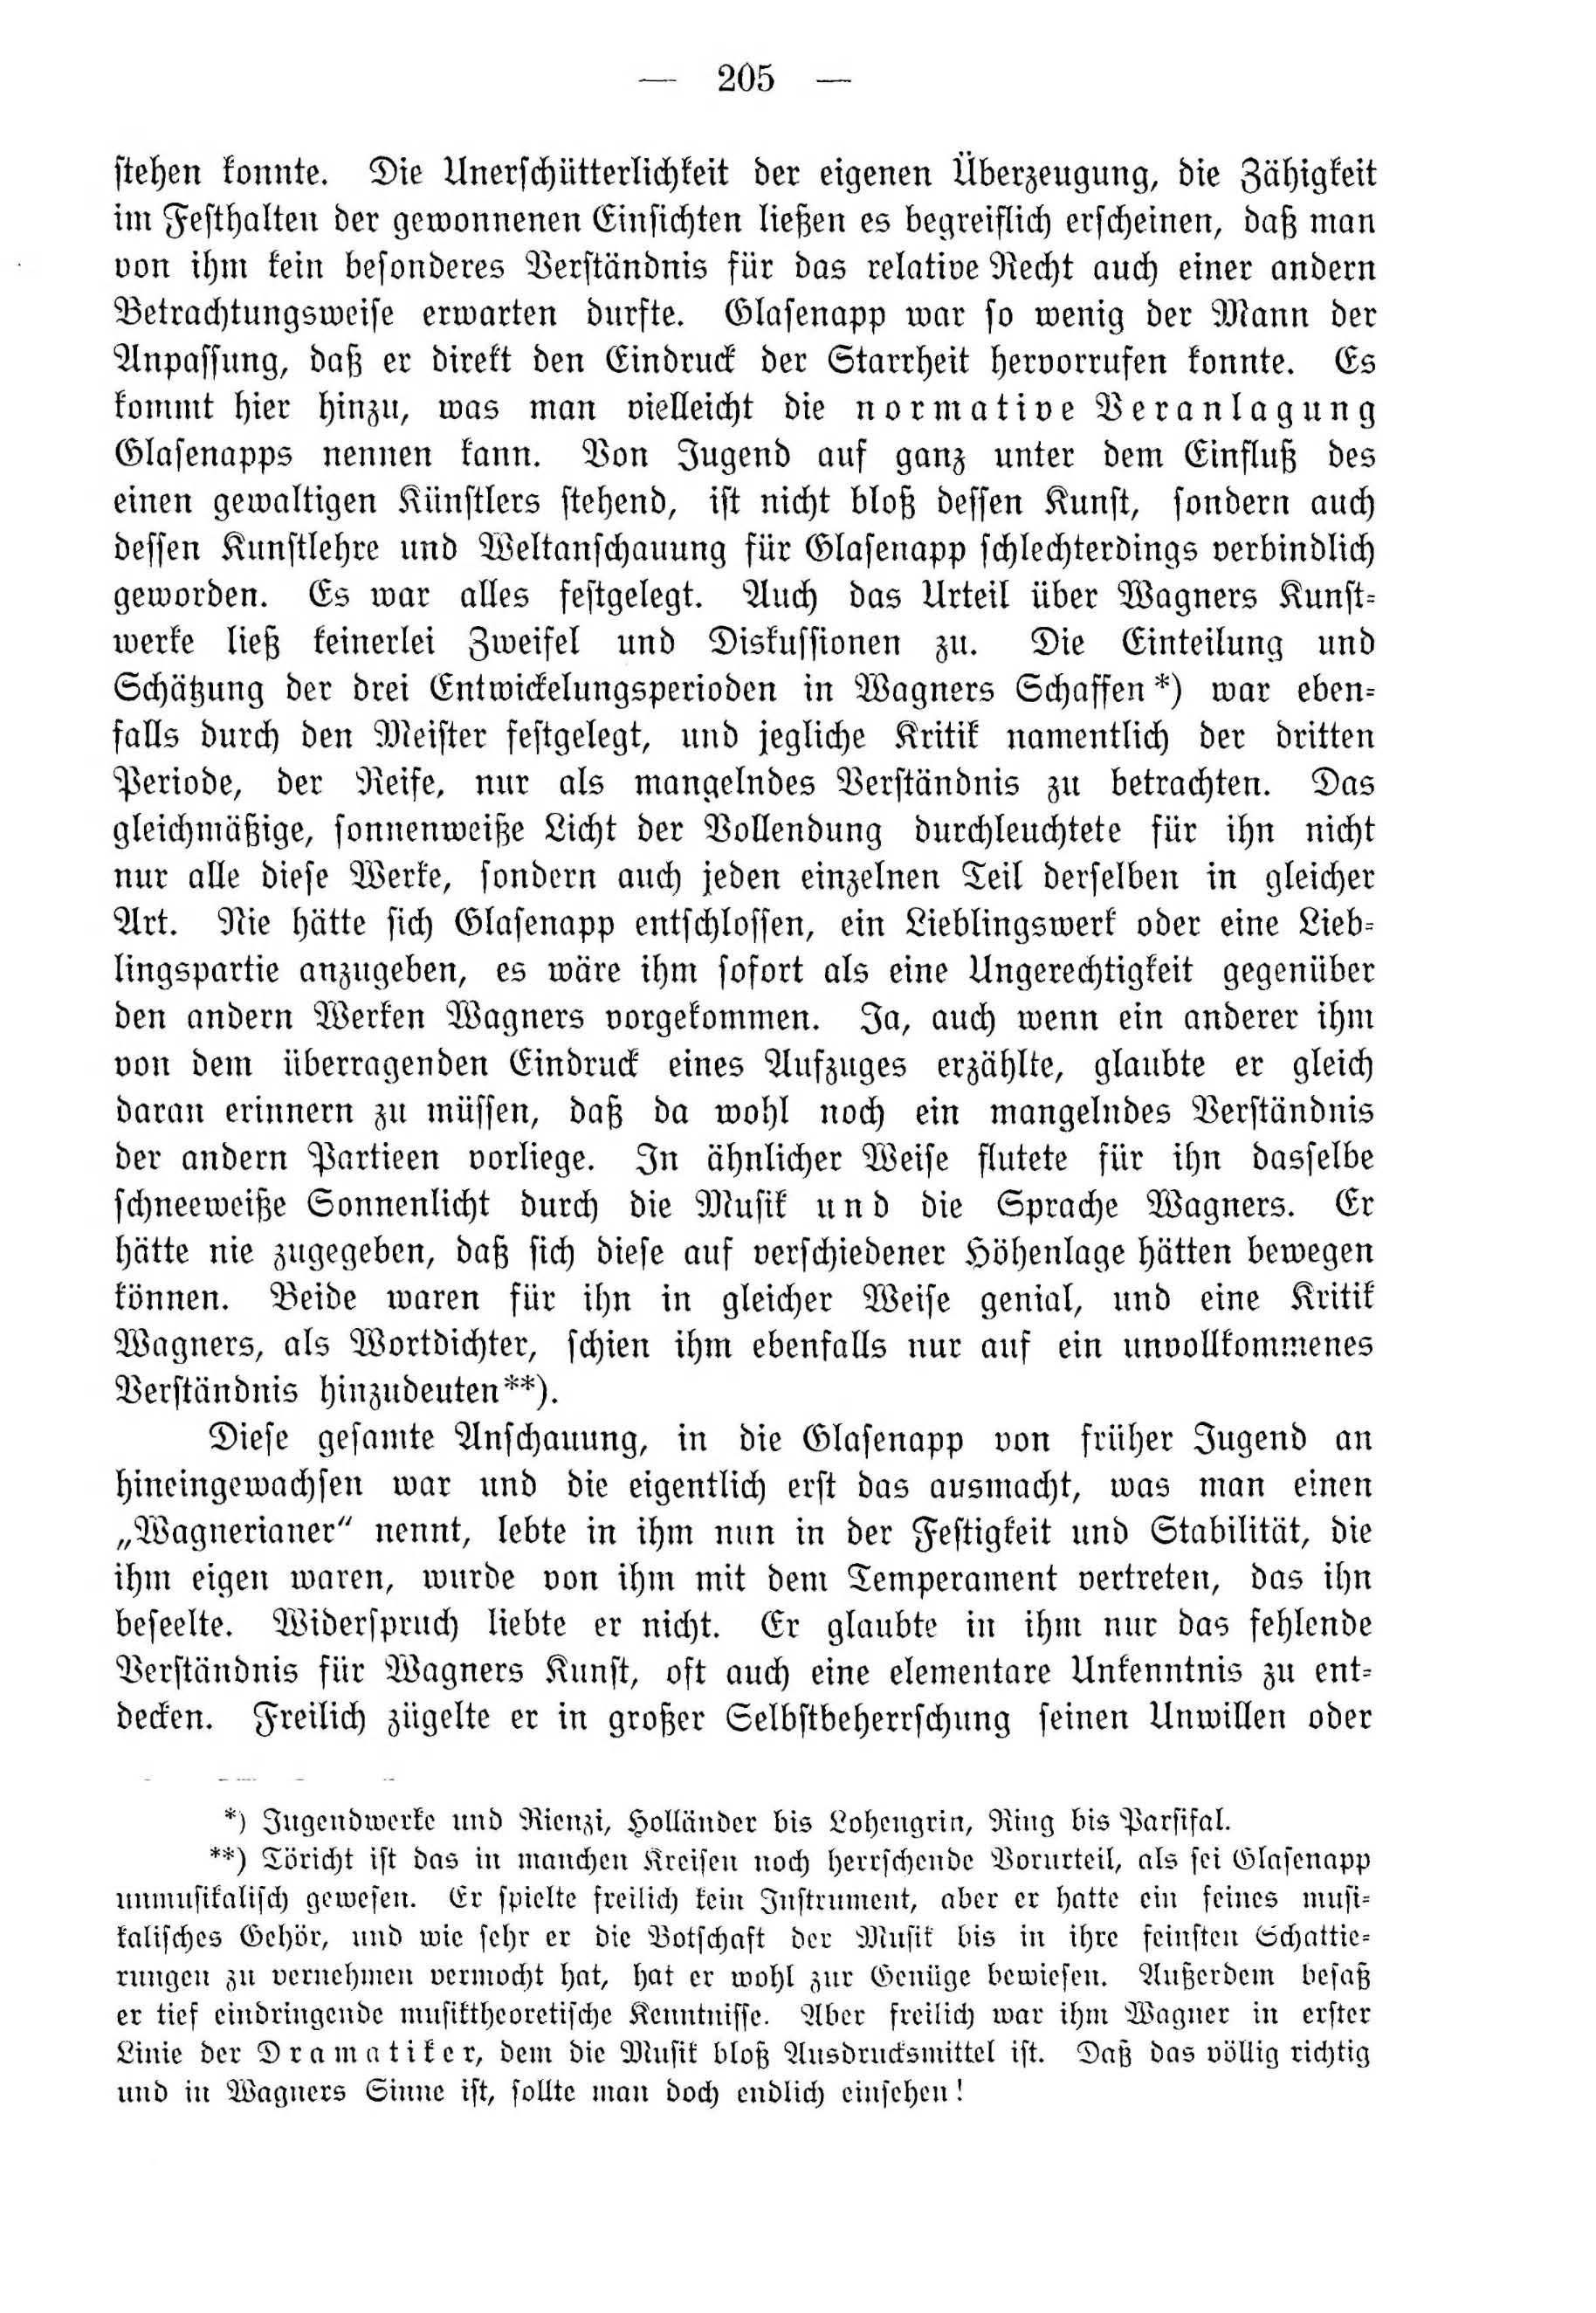 Deutsche Monatsschrift für Russland [4] (1915) | 205. (205) Haupttext